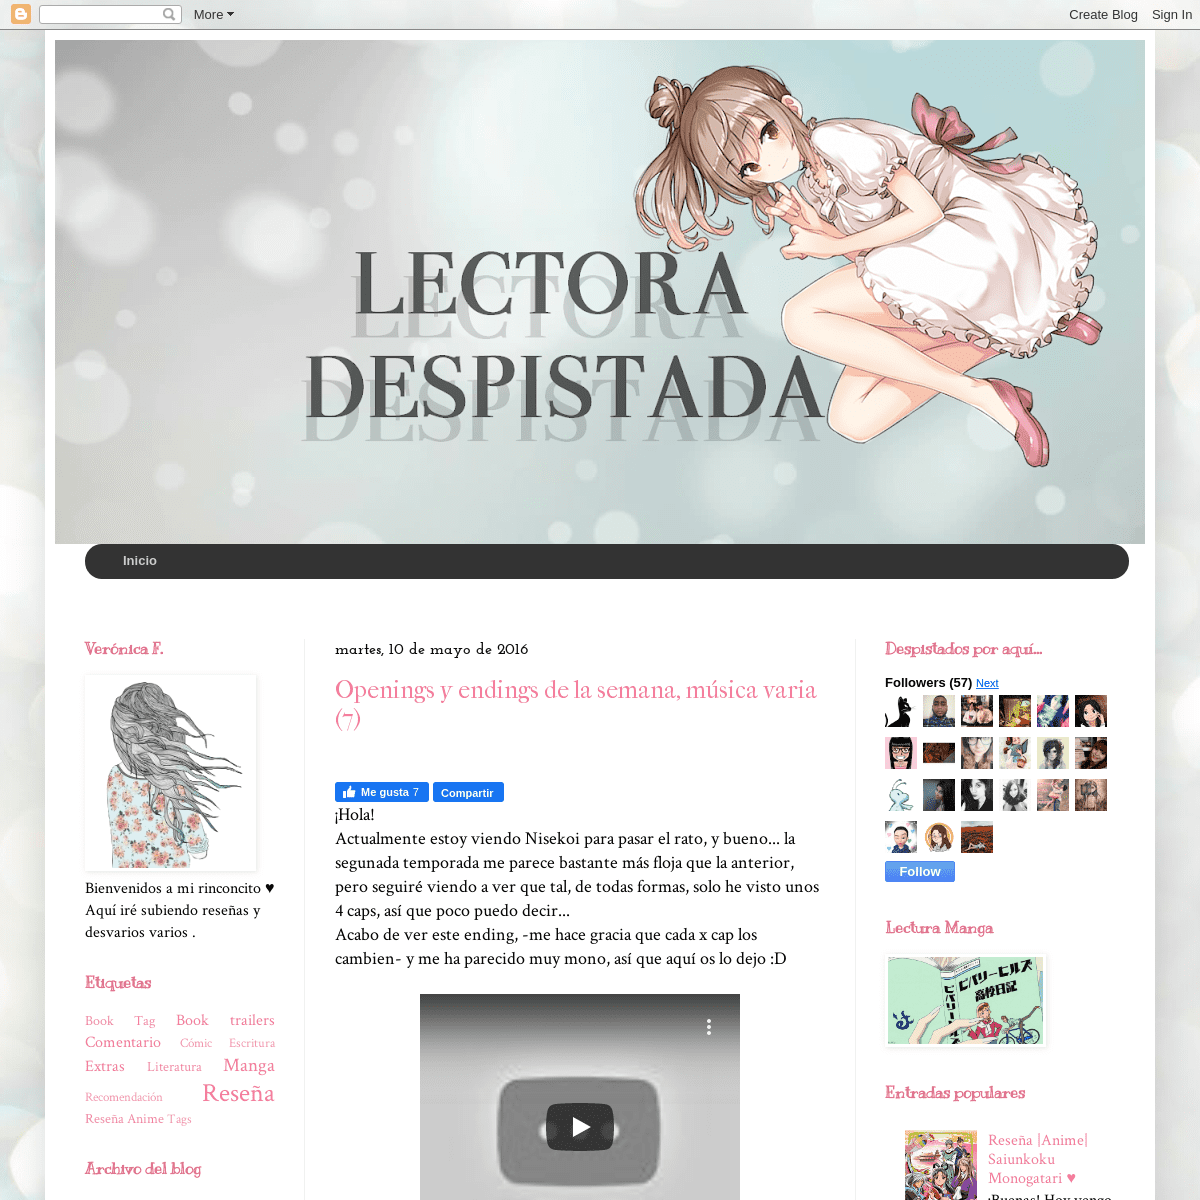 A complete backup of lectoradespistada.blogspot.com